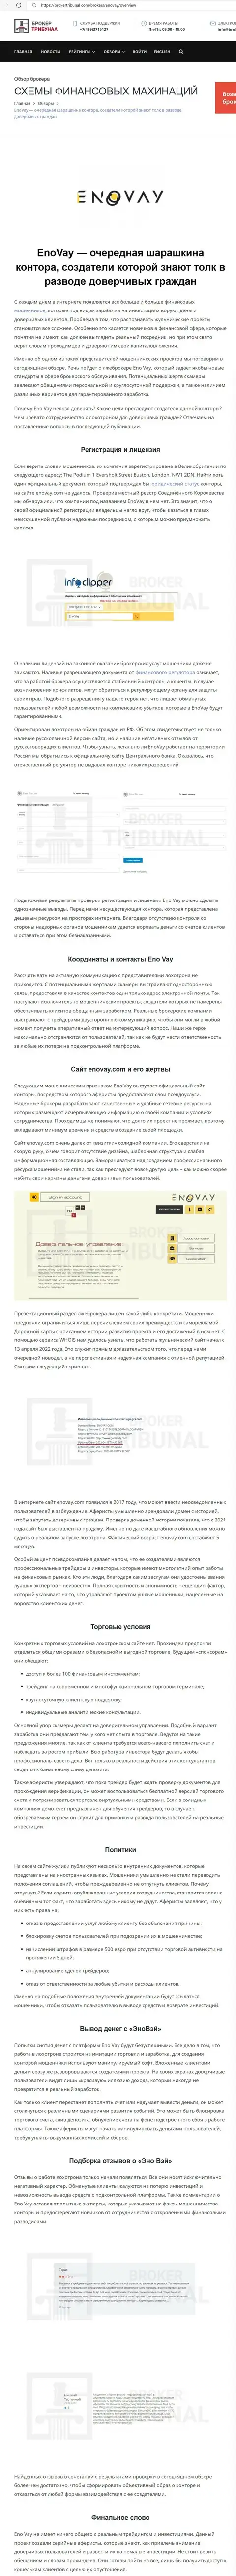 СОТРУДНИЧАТЬ СЛИШКОМ РИСКОВАННО - публикация с обзором EnoVay Com